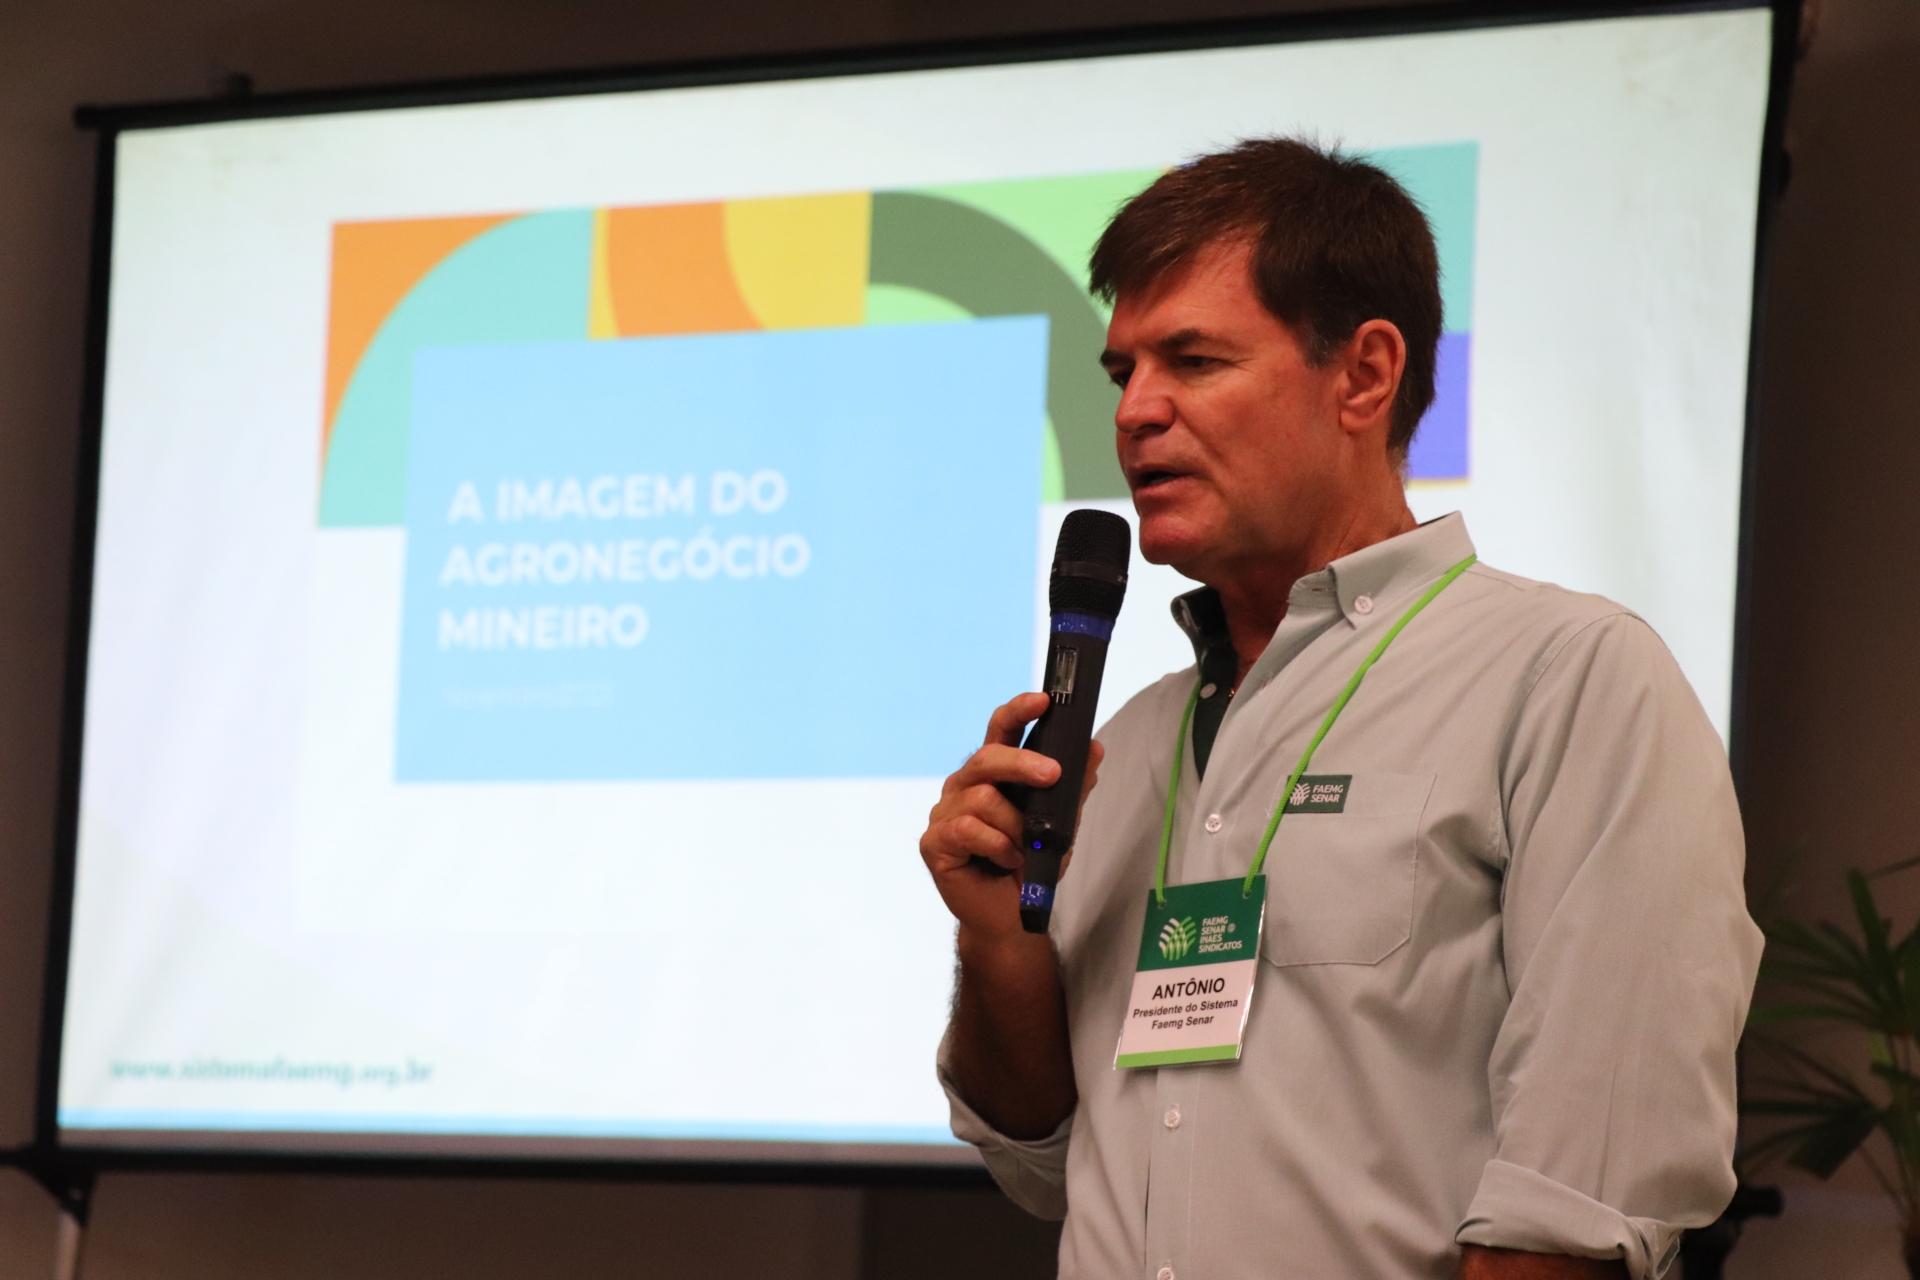 Presidente Antônio de Salvo apresentou os resultados da pesquisa sobre a imagem do agronegócio mineiro durante o Descobrir